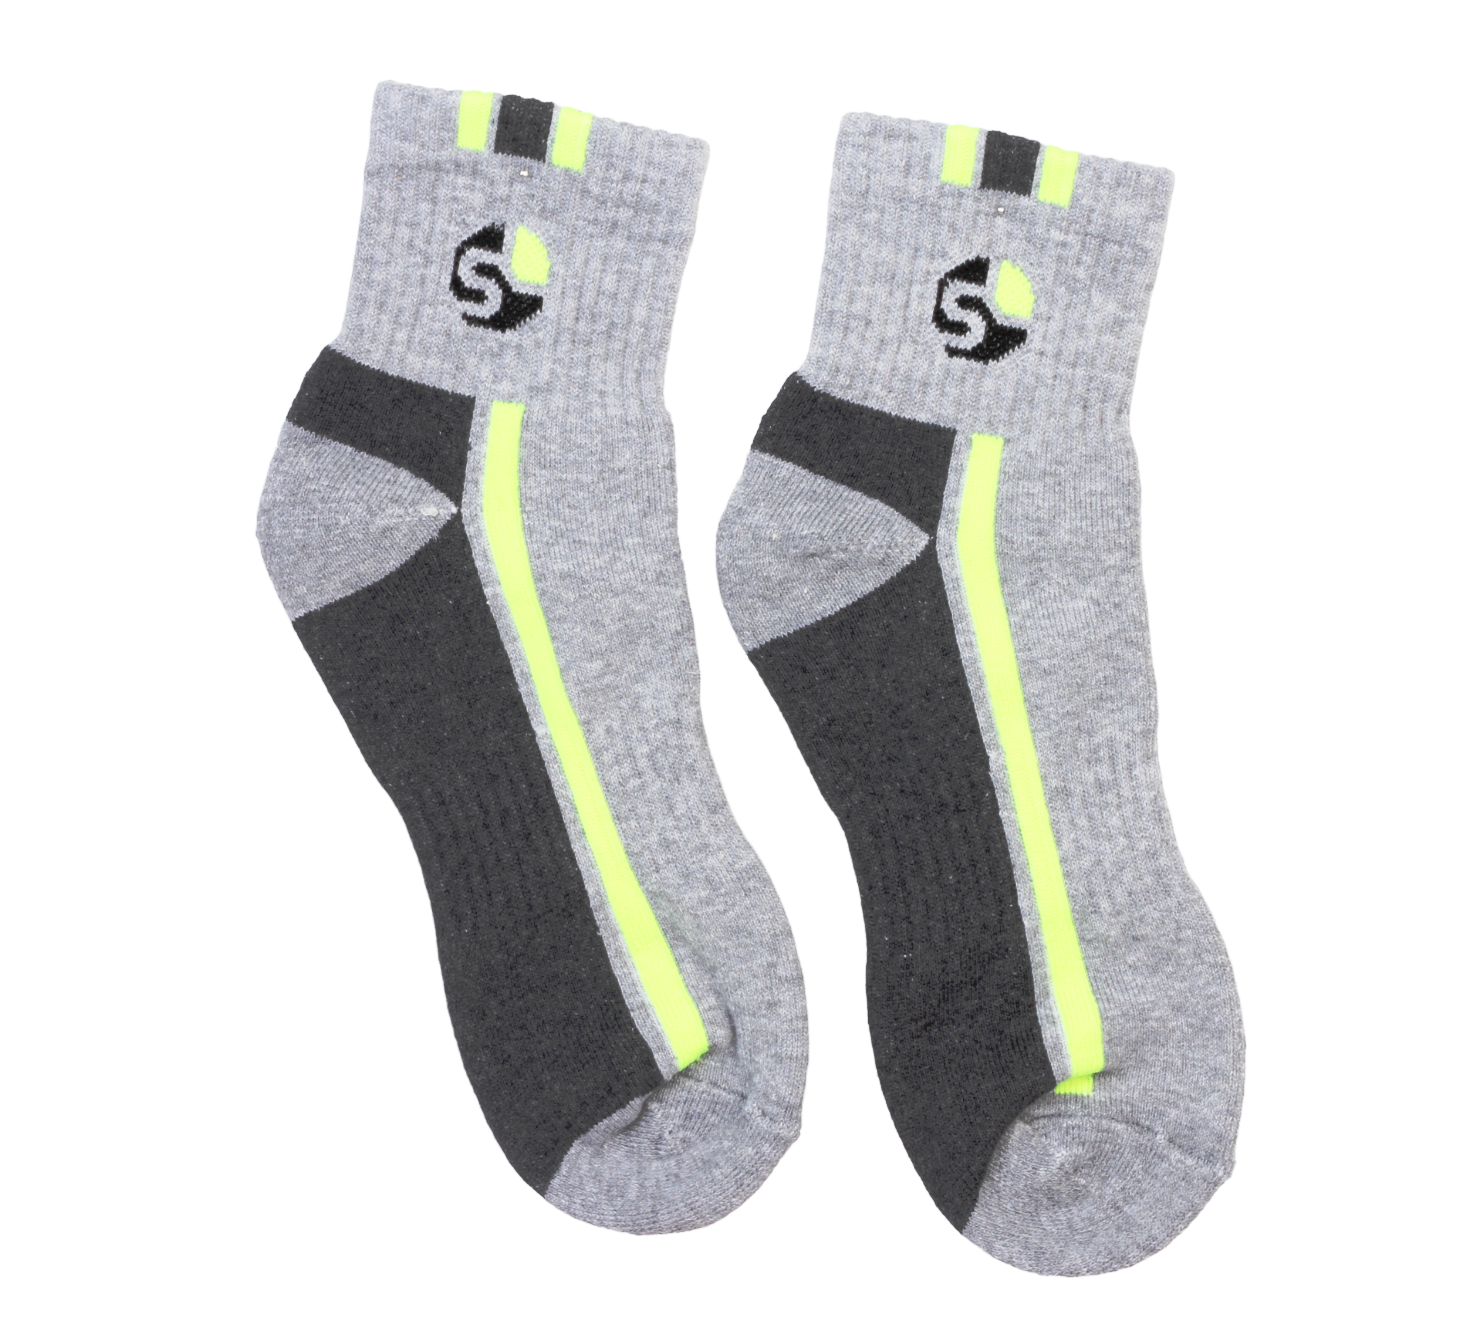 60948 Women Socks (PACK OF 5) – Sreeleathers Ltd